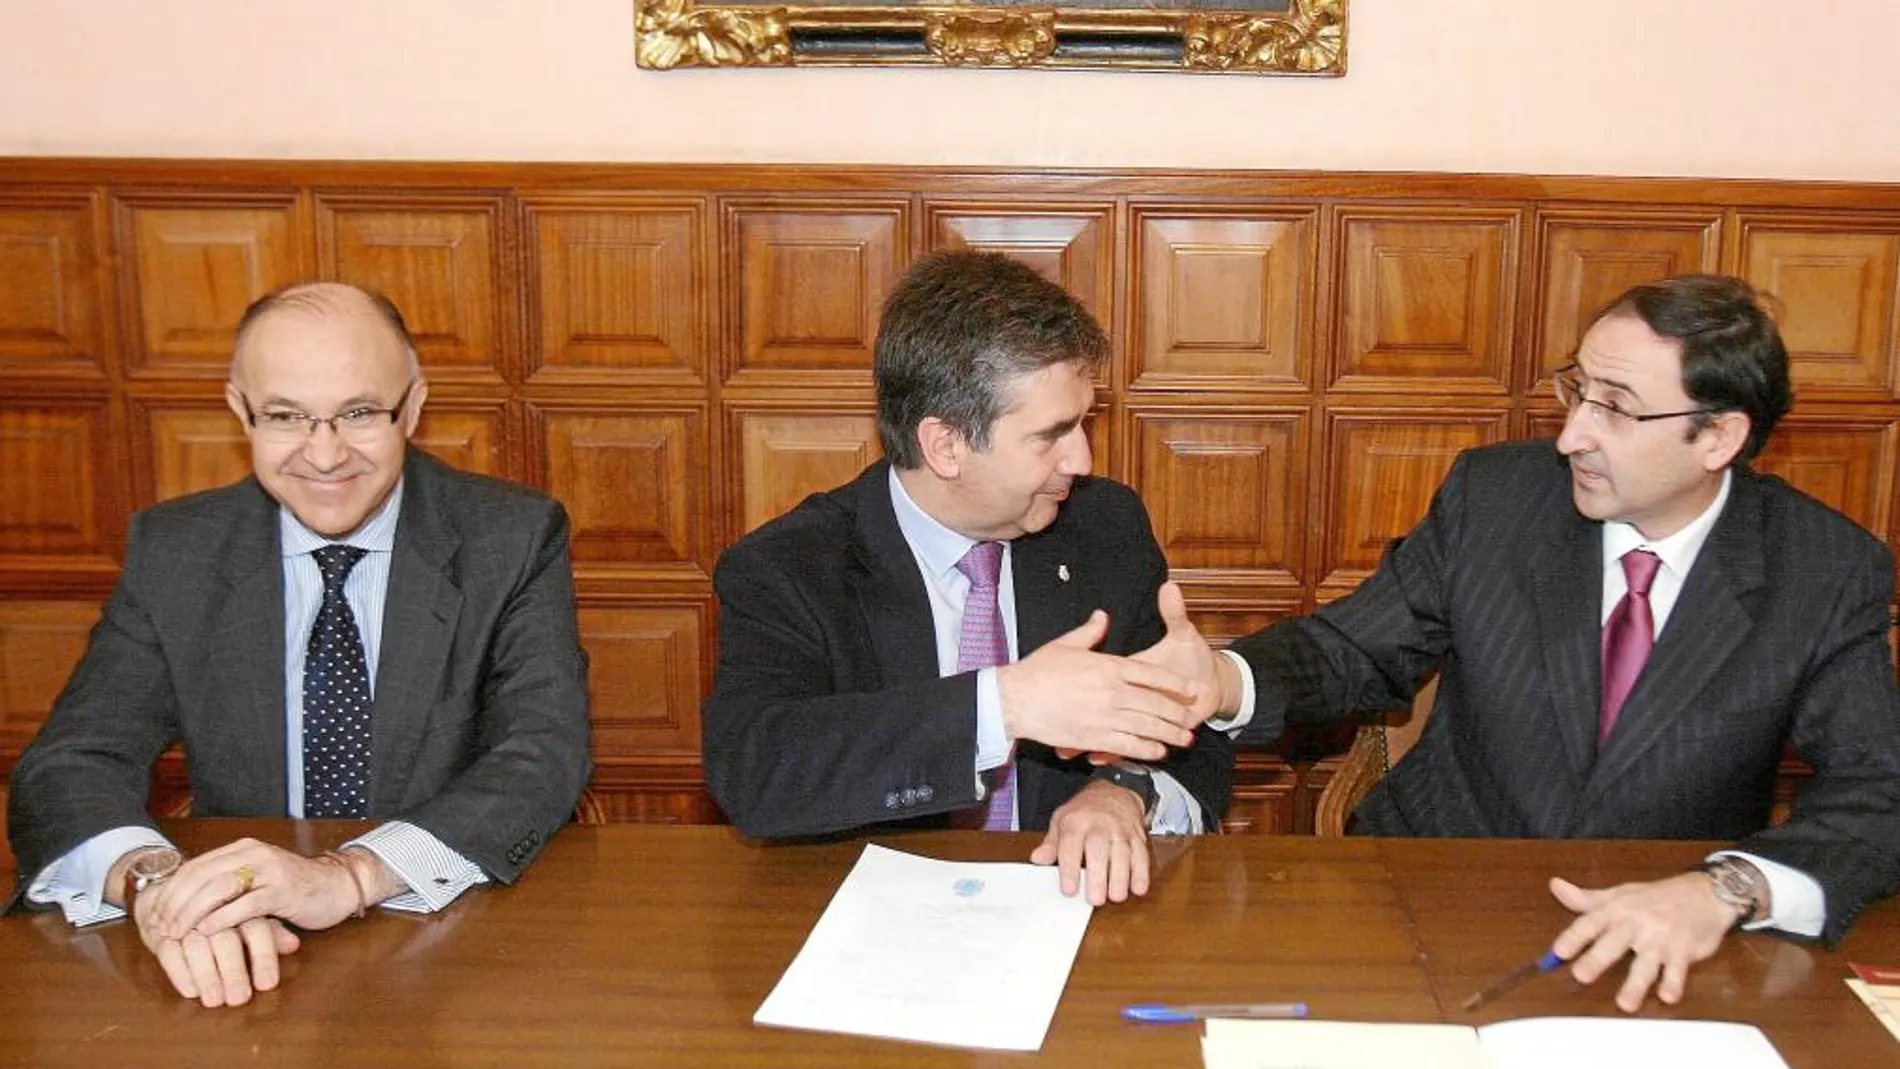 Firma del acuerdo entre Ignacio Cosidó y Alfonso Polanco, en presencia del delegado del Gobierno en Castilla y León, Ramiro Ruiz Medrano